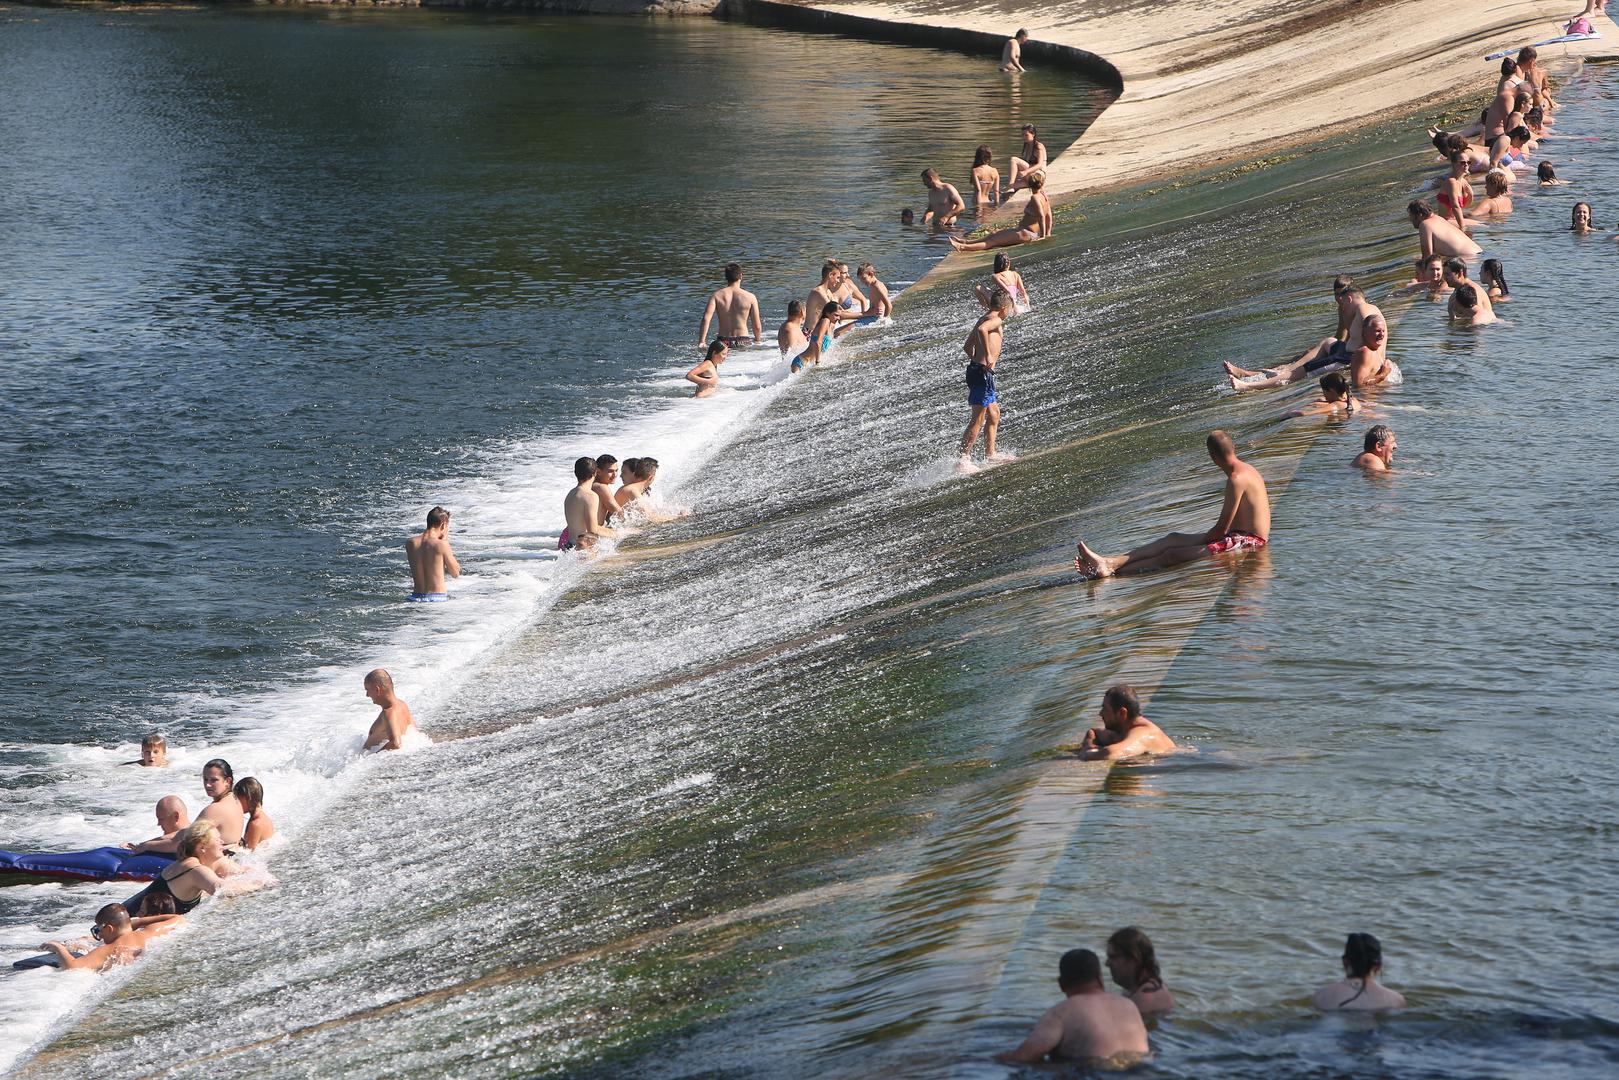 Osvježenje od visokih ljetnih temperatura brojni Karlovčani traže u rijeci Korani čija je temperatura 26 stupnjeva. Foginovo kupalište svakodnevno je prepuno kupača